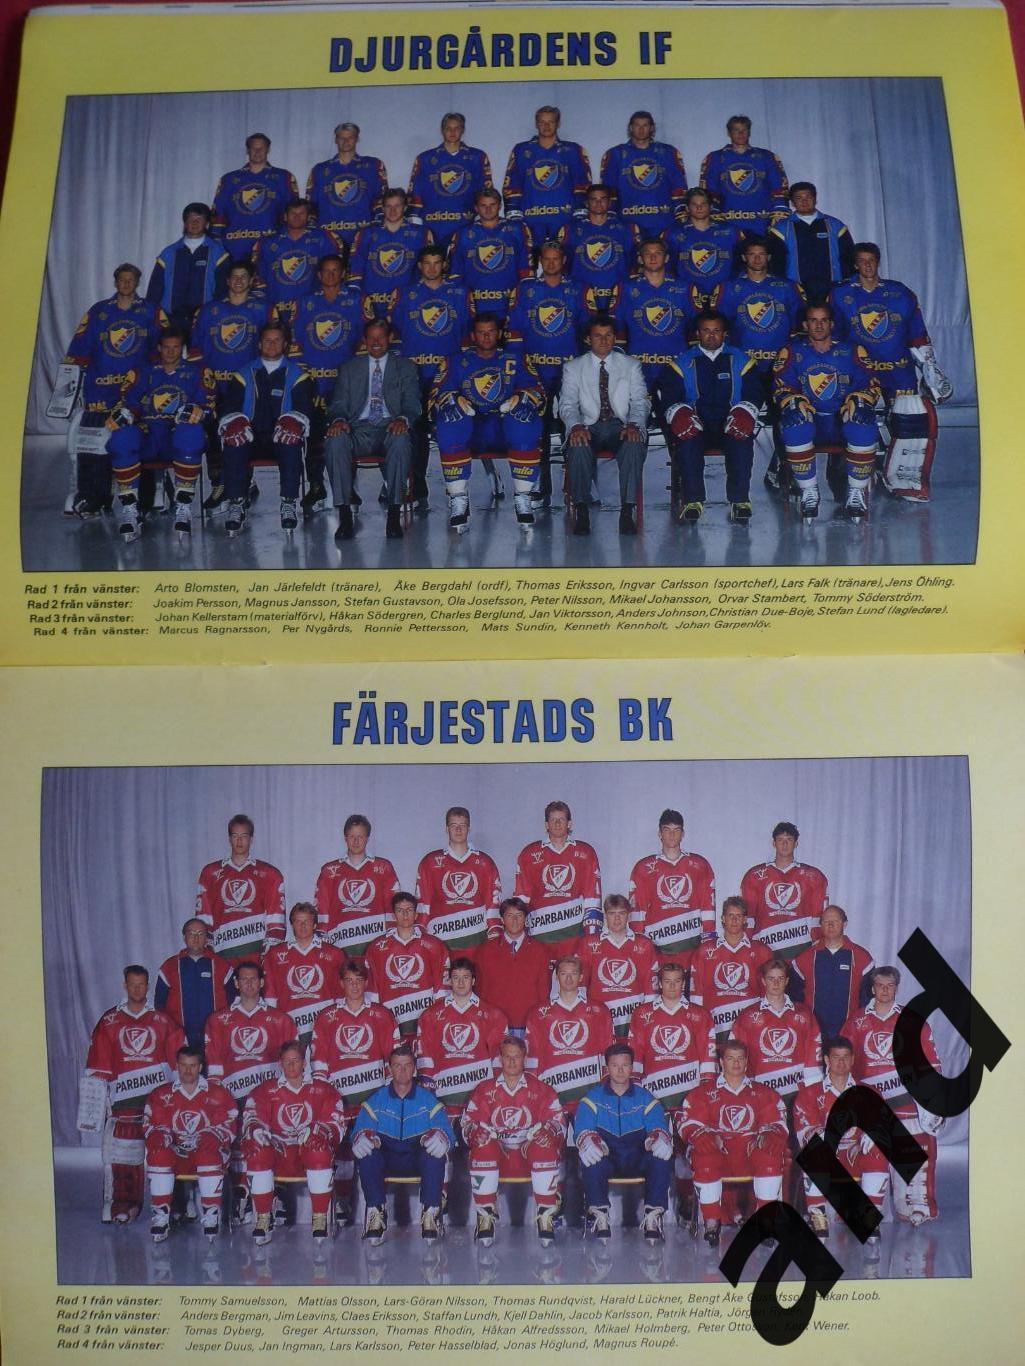 журнал Хоккей (Швеция) № 8 (1990) постеры всех команд Элитсерии 3